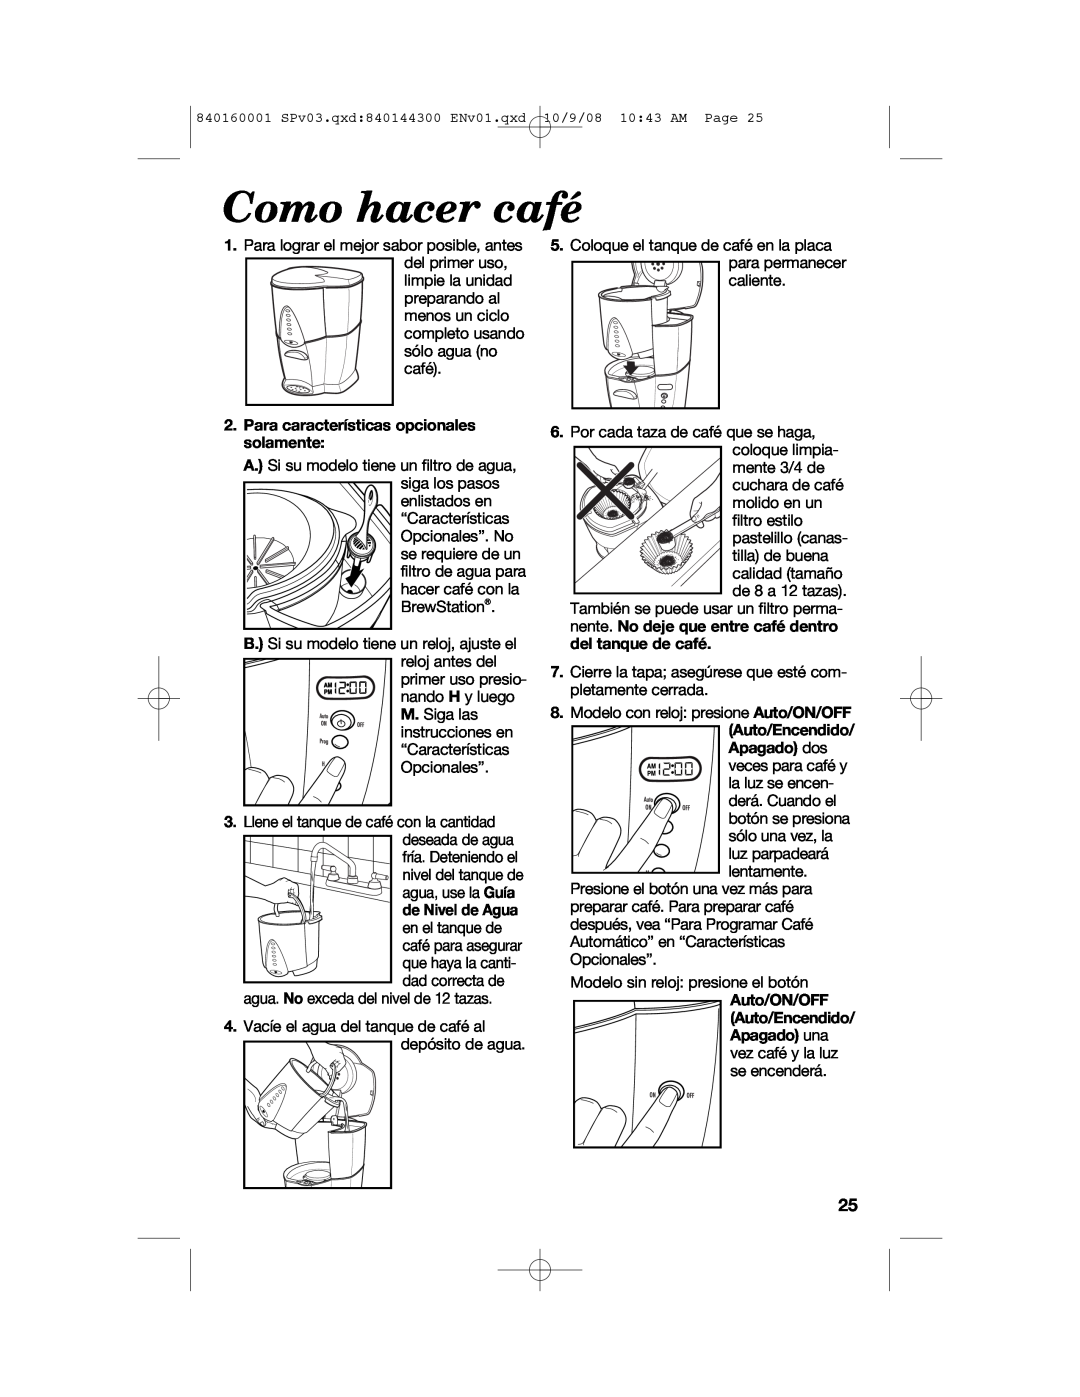 Hamilton Beach 47214 manual Como hacer café, Para características opcionales solamente, de Nivel de Agua, Auto/ON/OFF 